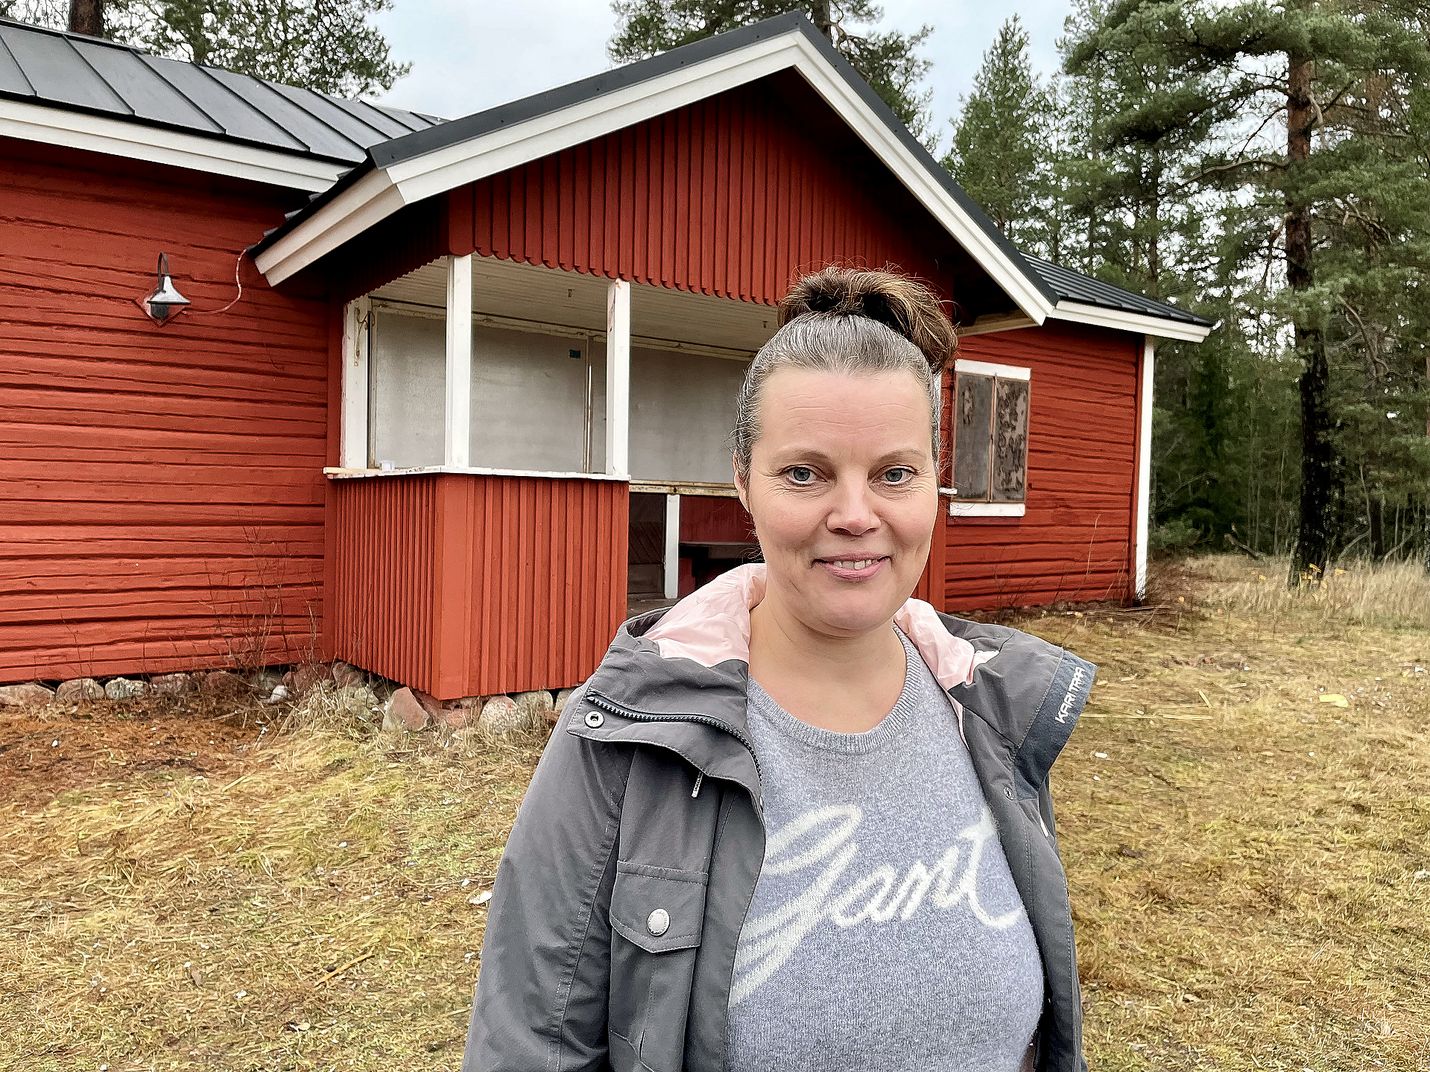 Kämpän Kaffetuvan uusi omistaja Outi Heinonen kertoo, että 110-vuotias hirsirakennus on ikäisekseen varsin hyvässä kunnossa. Tuvan katto on nyt uusittu ja ulkoseinät maalattu kauniin punaisiksi. 